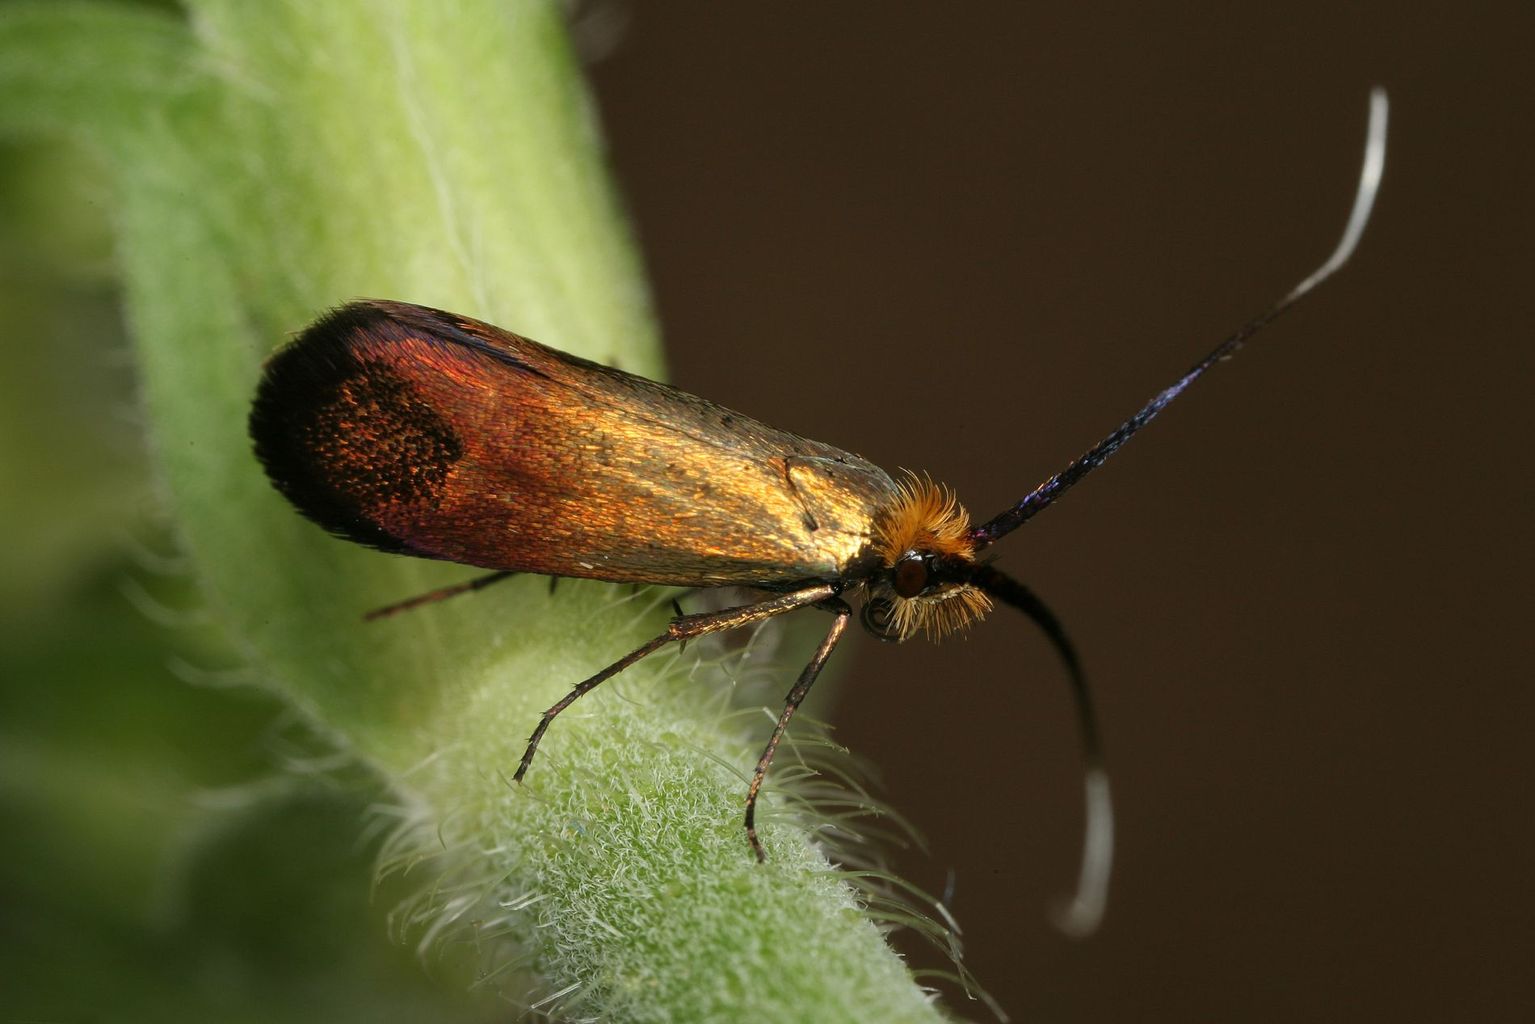 Weibchen von Nemophora cupriacella. Es ist die einzige sich parthenogenetisch fortpflanzende Adeliden-Art Europas. (Bild Rudolf Bryner)